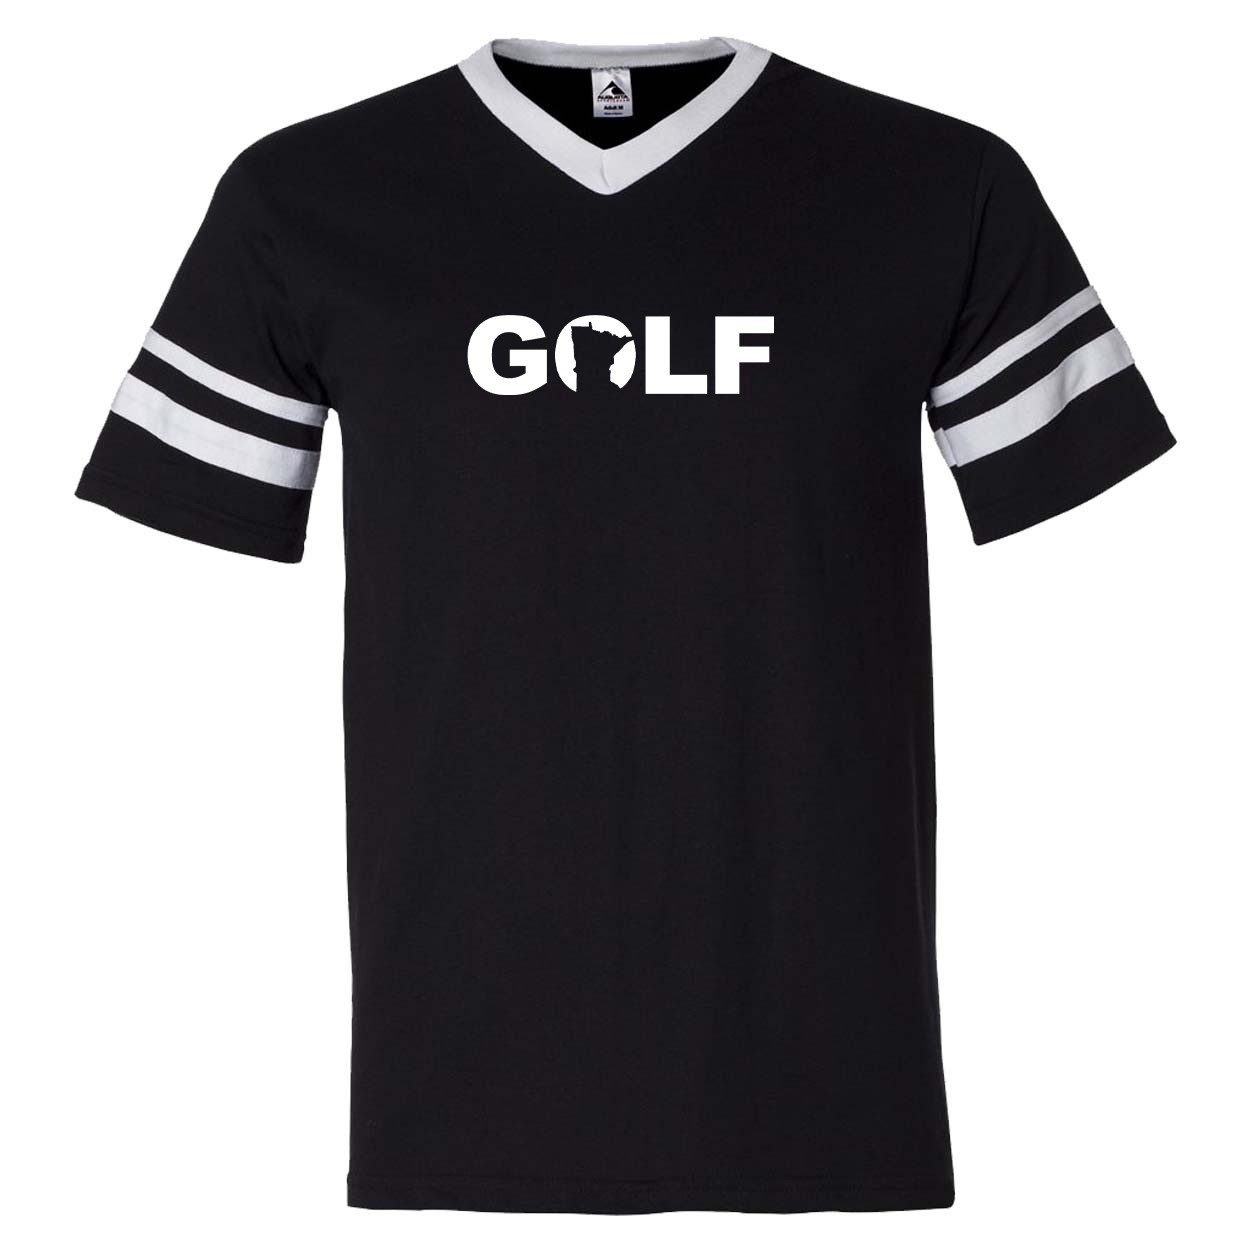 Golf Minnesota Classic Premium Striped Jersey T-Shirt Black/White (White Logo)